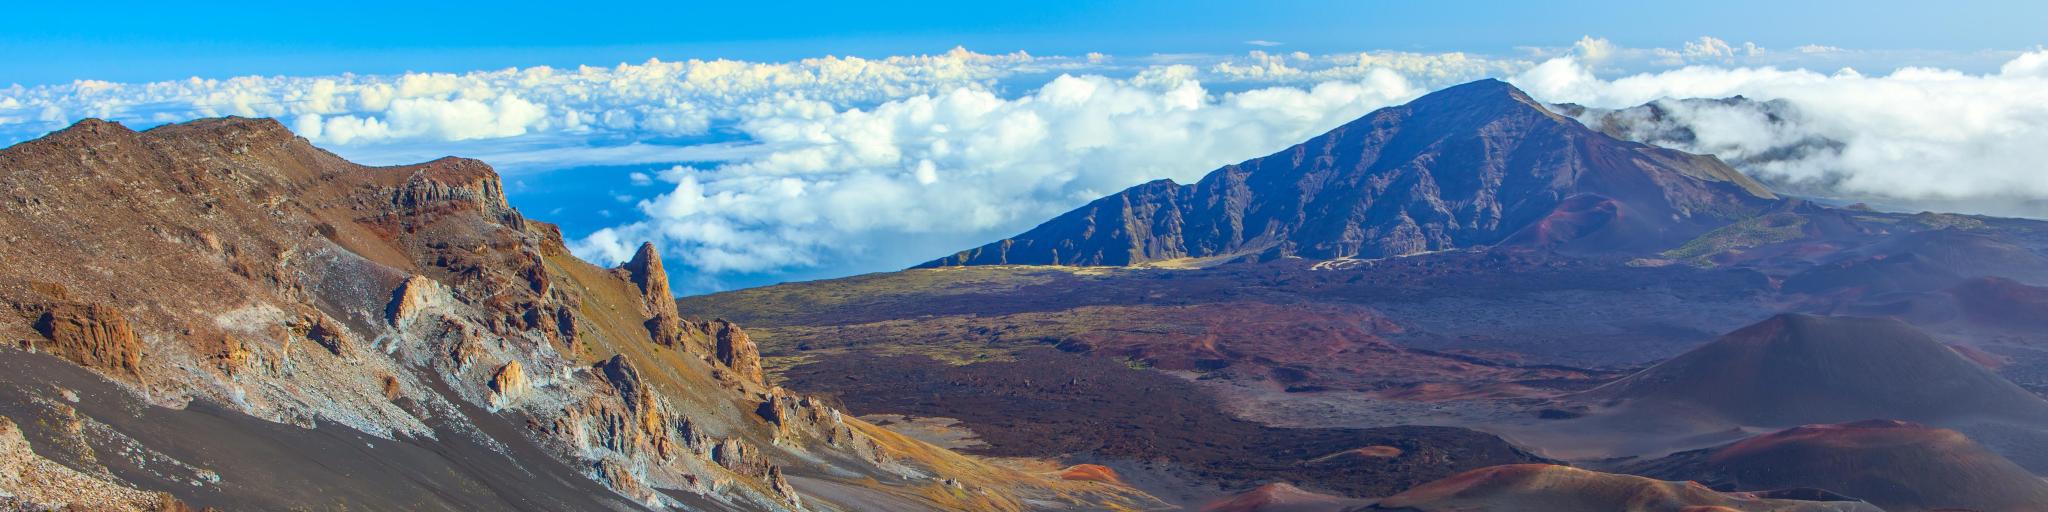 View of Haleakala volcano. Maui.